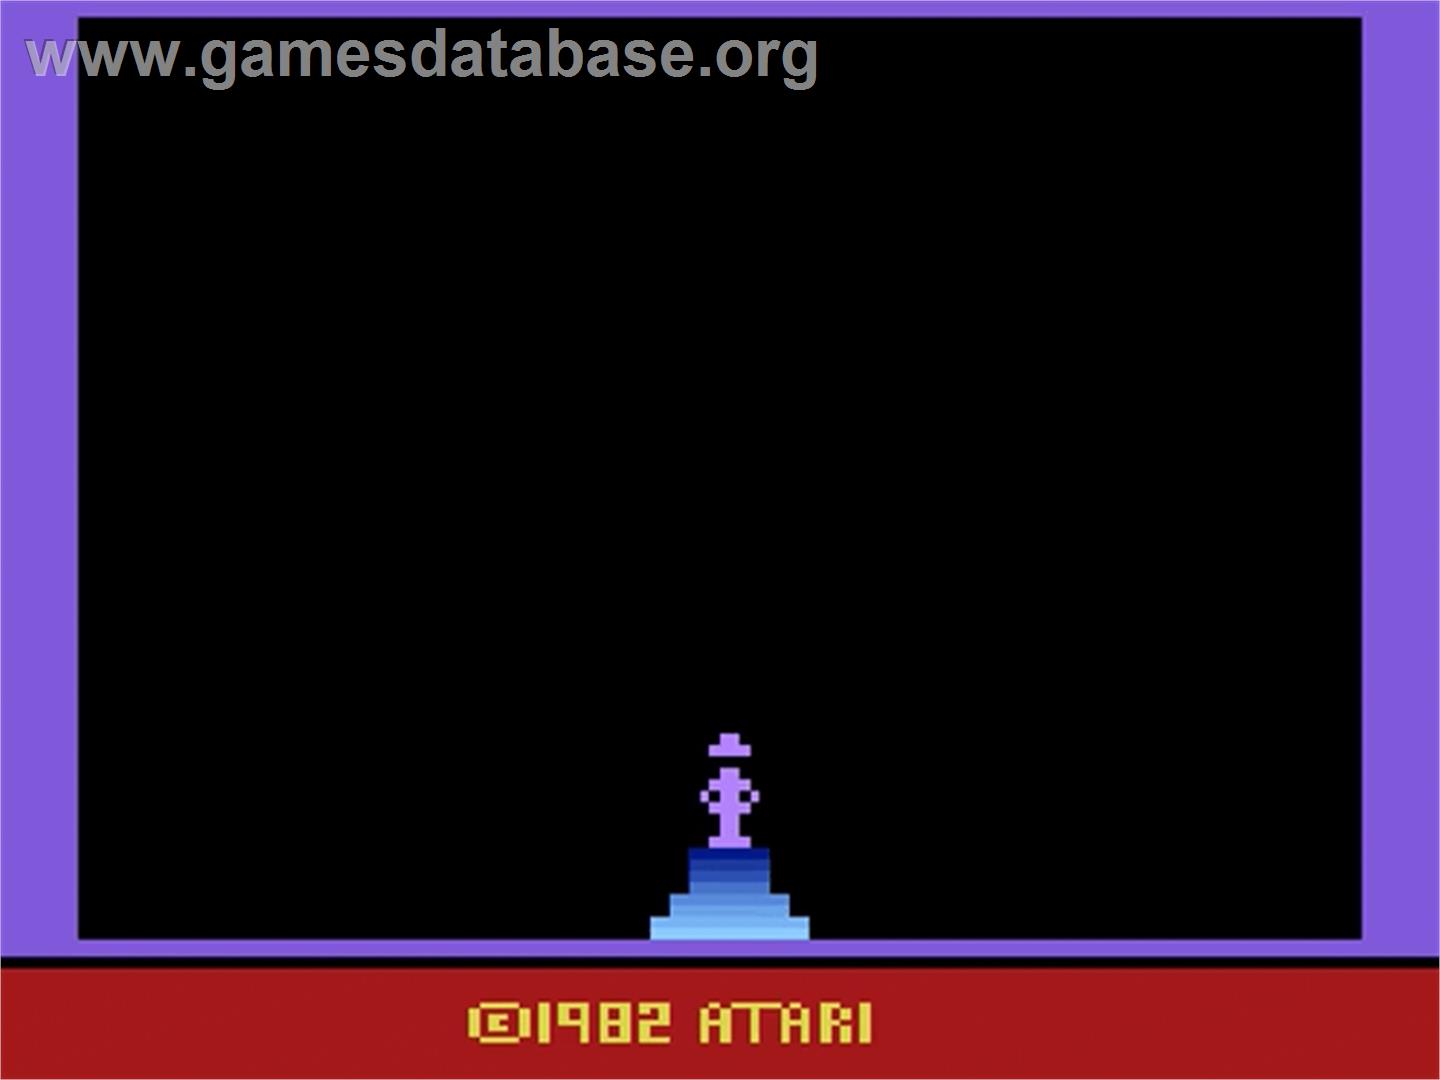 Raiders of the Lost Ark - Atari 2600 - Artwork - Title Screen